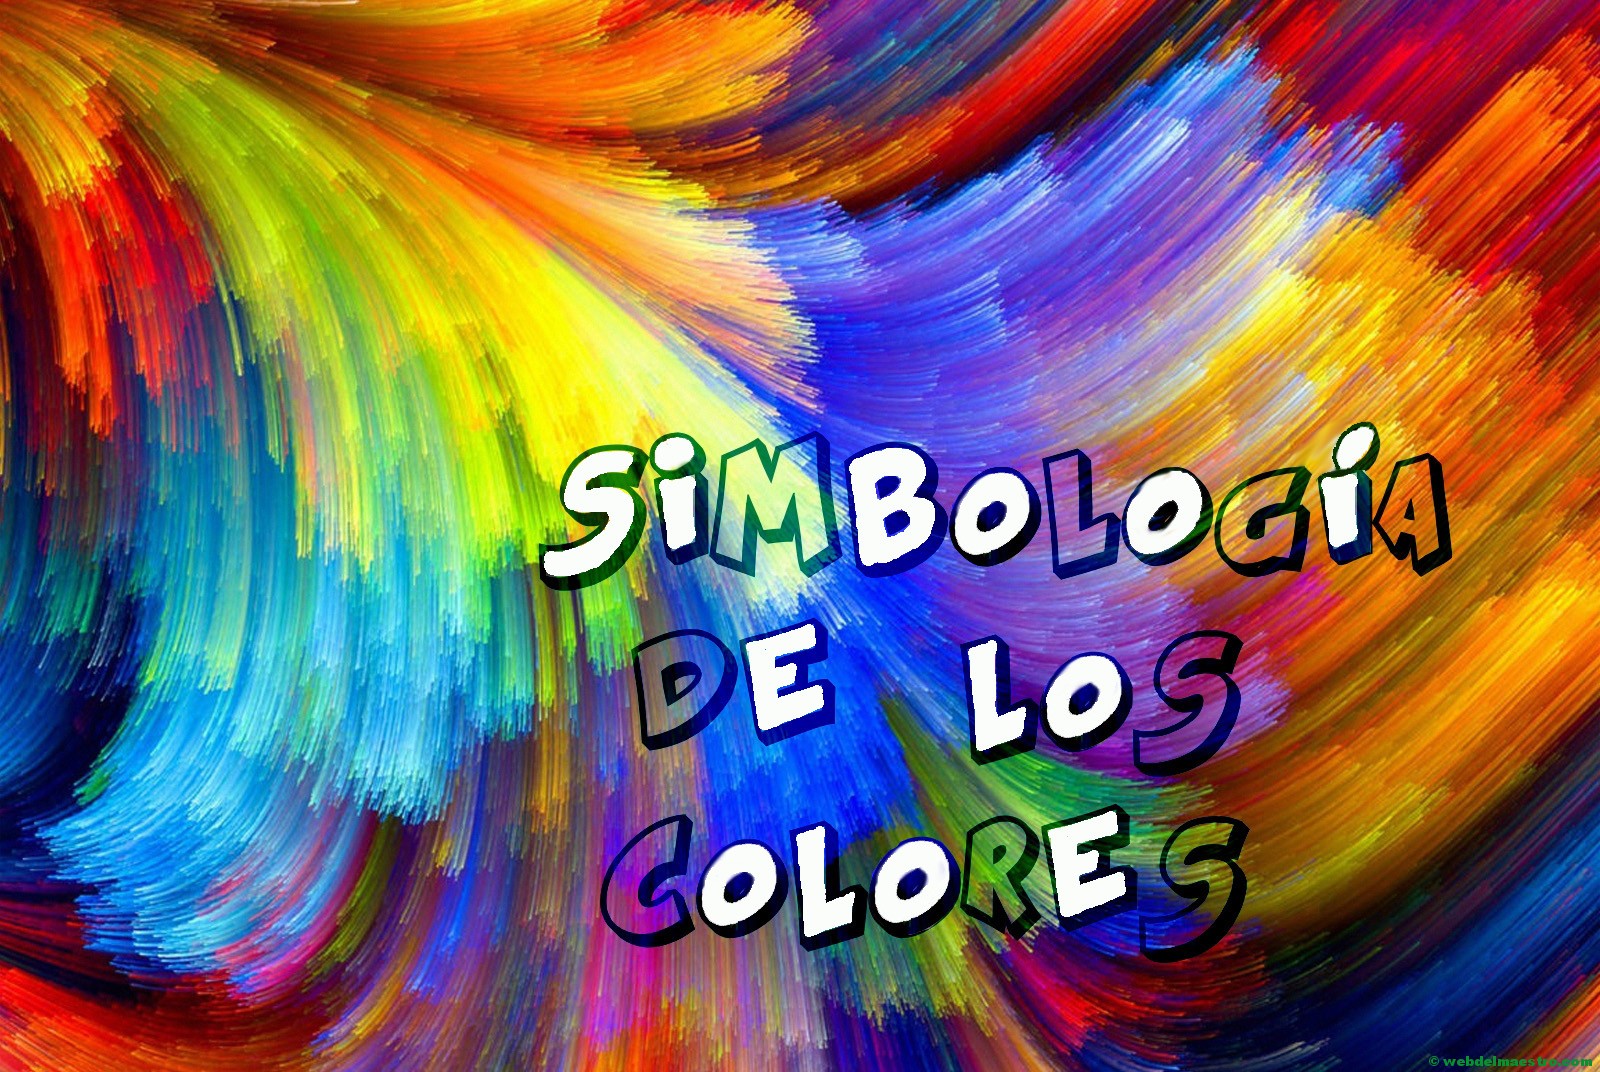 Simbología de los colores - Web del maestro